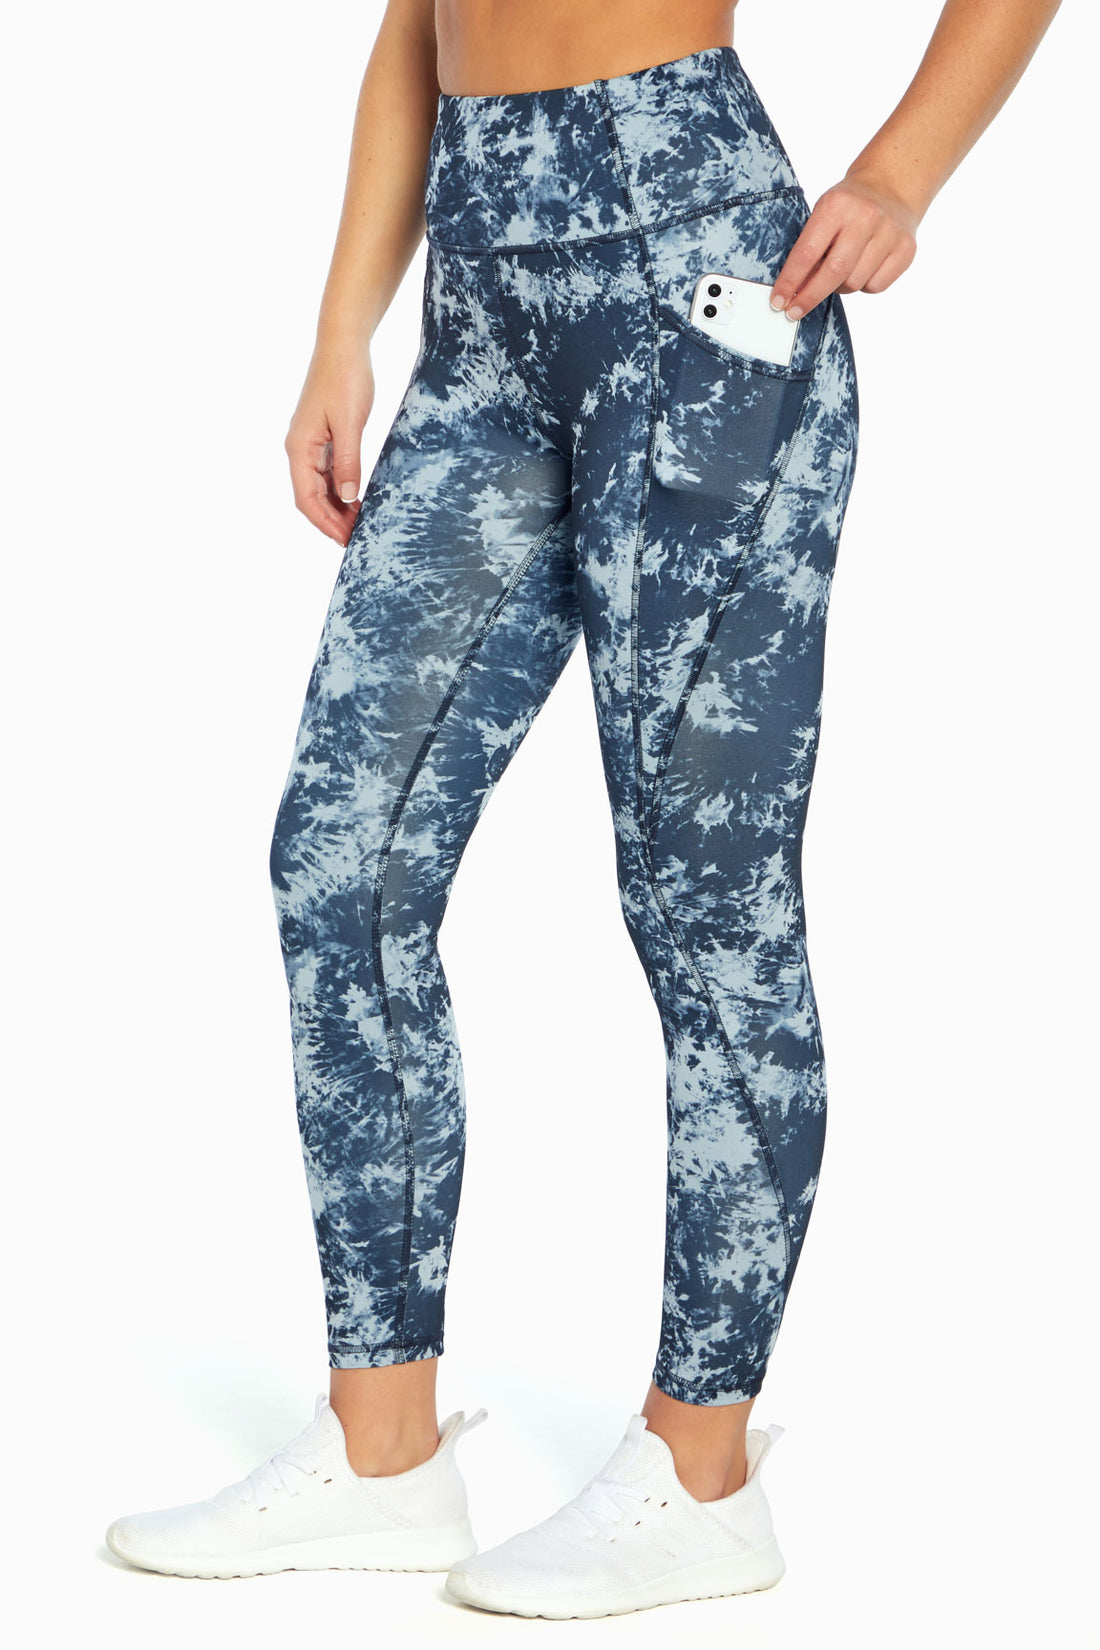 Marika Zebra Print Multi Color Blue Active Pants Size M - 66% off